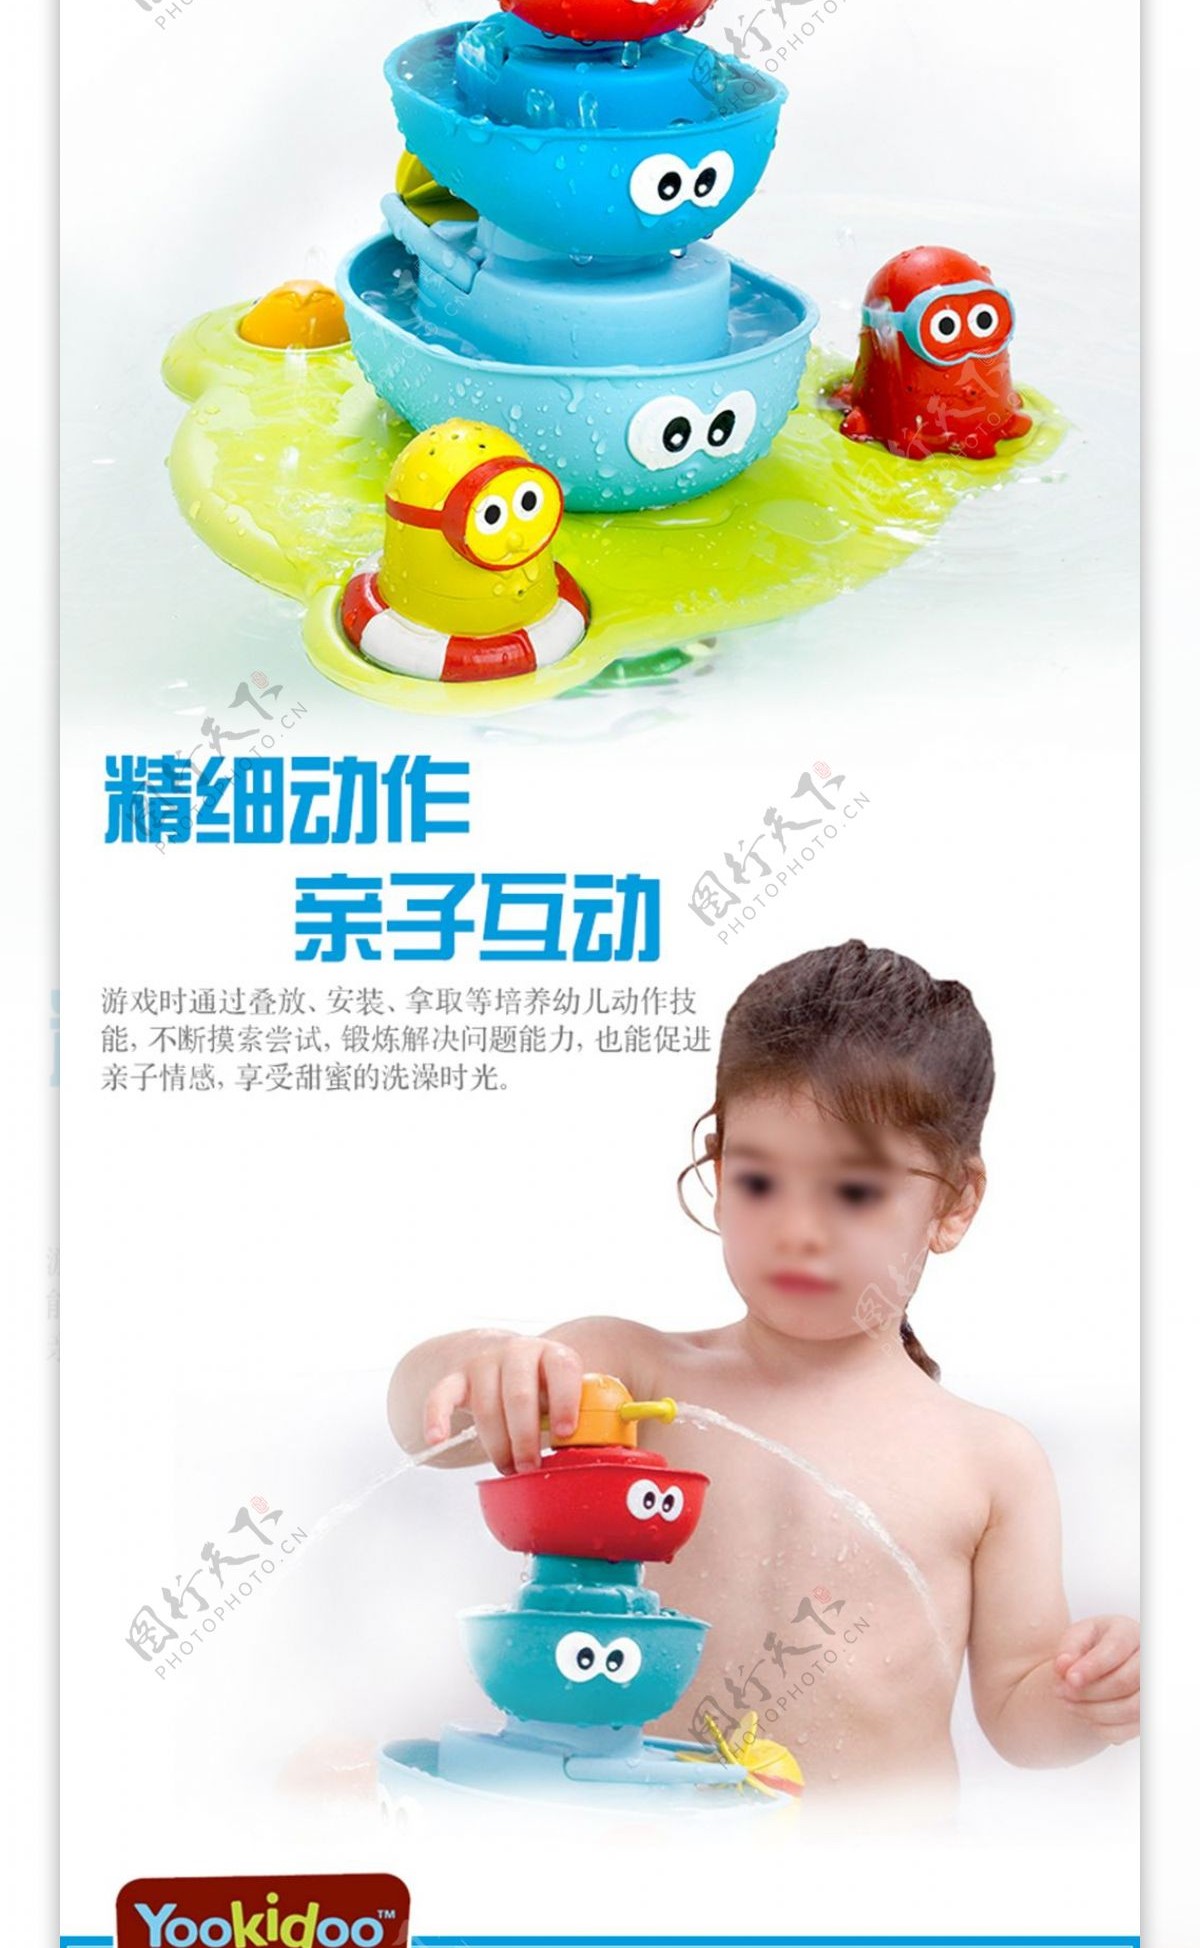 yookidoo宝宝喷水浮船戏水洗澡玩具